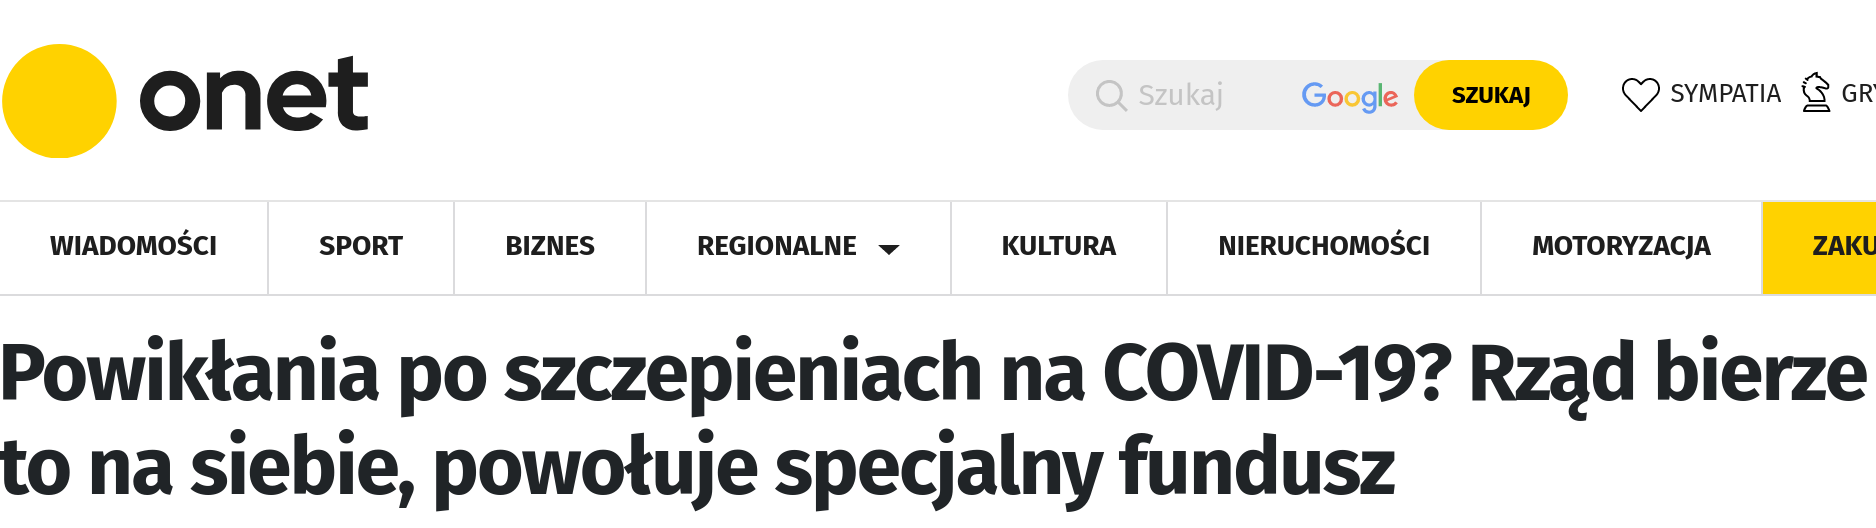 Zrzut ekranu z serwisu Onet.pl z tytułem o treści: Powikłania po szczepieniach na COVID-19? Rząd bierze to na siebie, powołuje specjalny fundusz